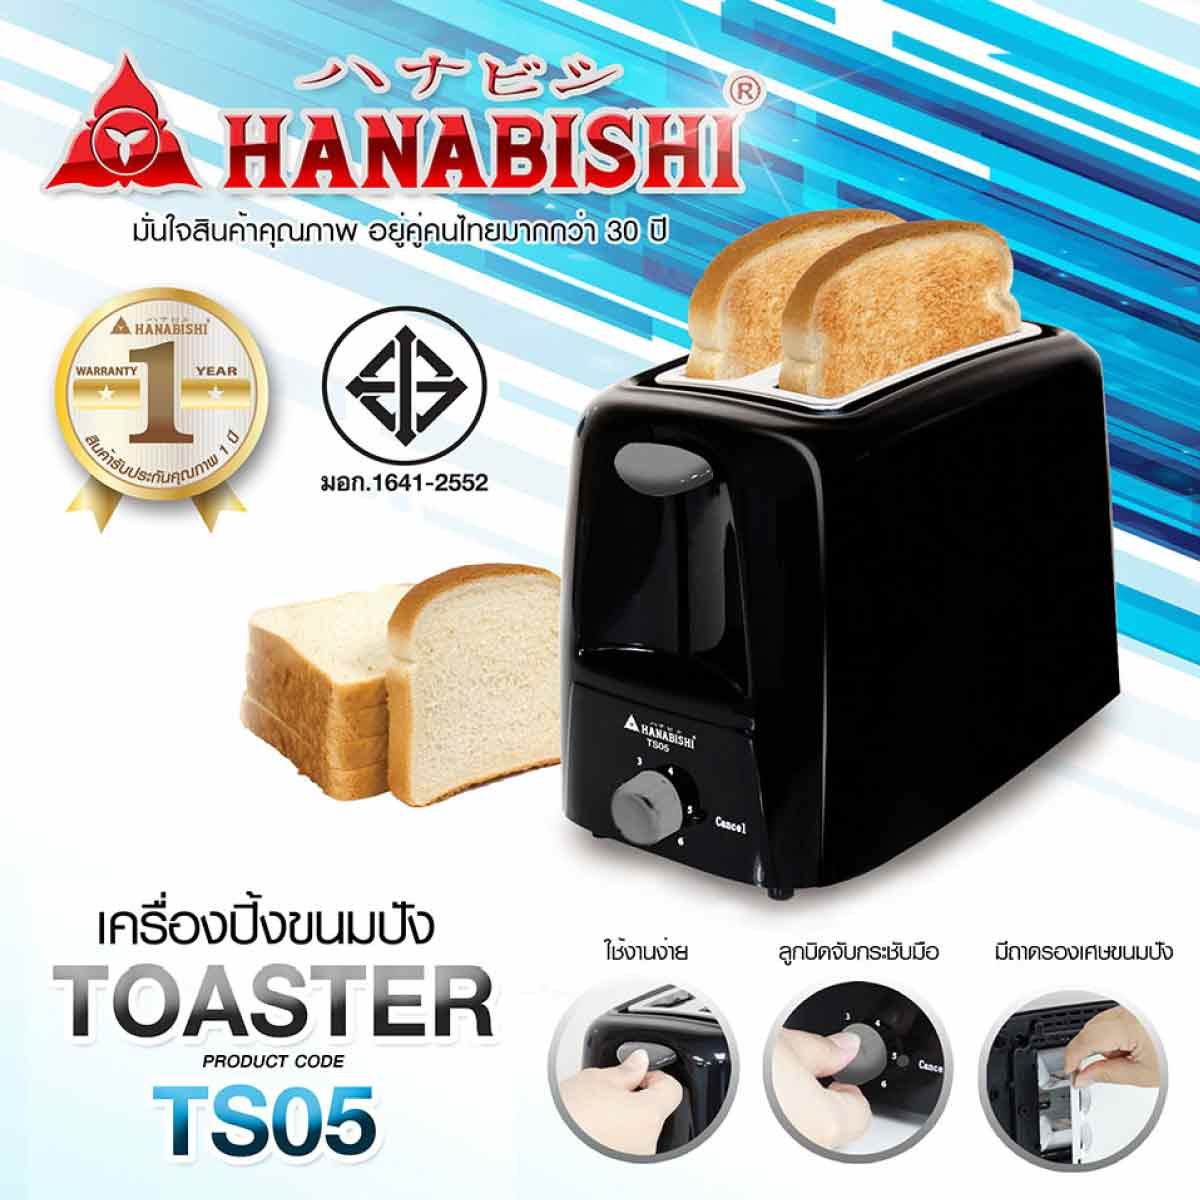 HANABISHI   เครื่องปิ้งขนมปัง 750W รุ่น TS05